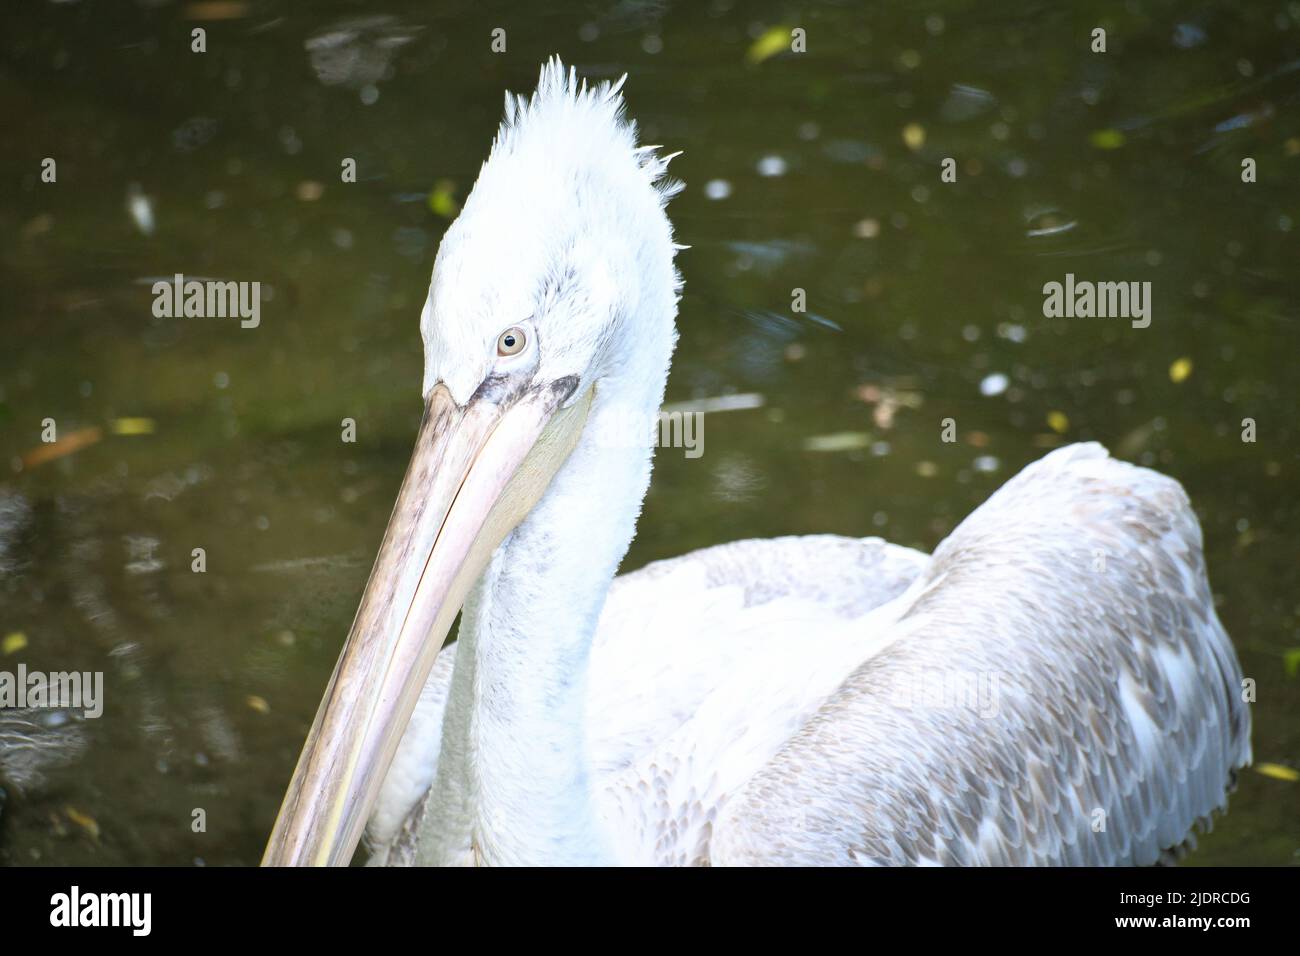 Pelikan schwimmt im Wasser. Weißes Gefieder, großer Schnabel, in einem großen Meeresvögel. Tierfoto Stockfoto